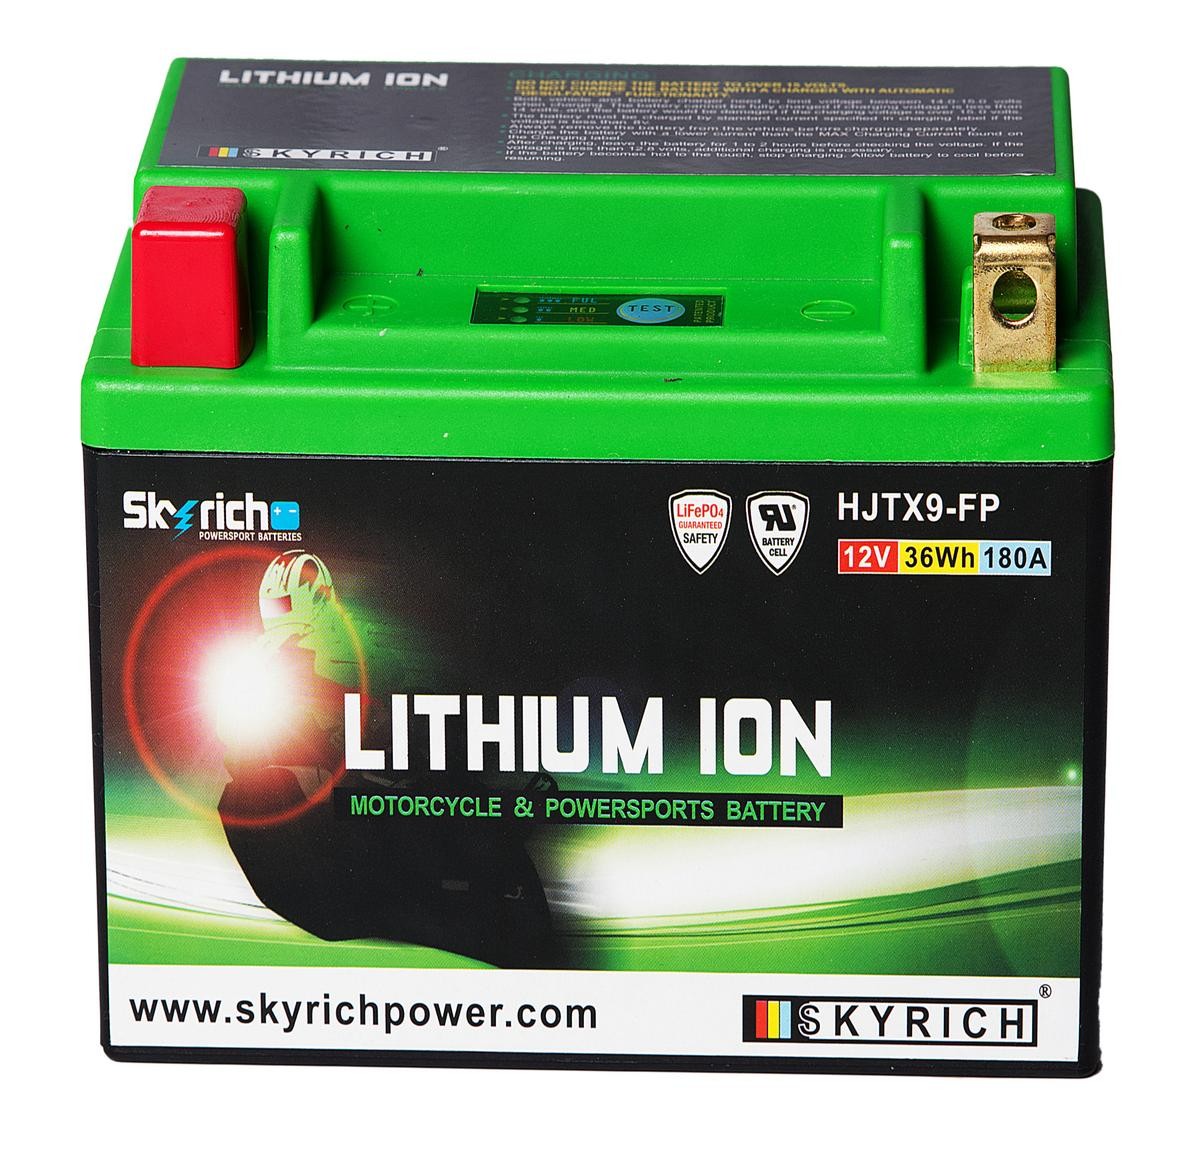 ETON BEAMER Batterie 12V 3Ah 180A N Li-Ionen-Batterie SKYRICH LITHIUM ION HJTX9-FP